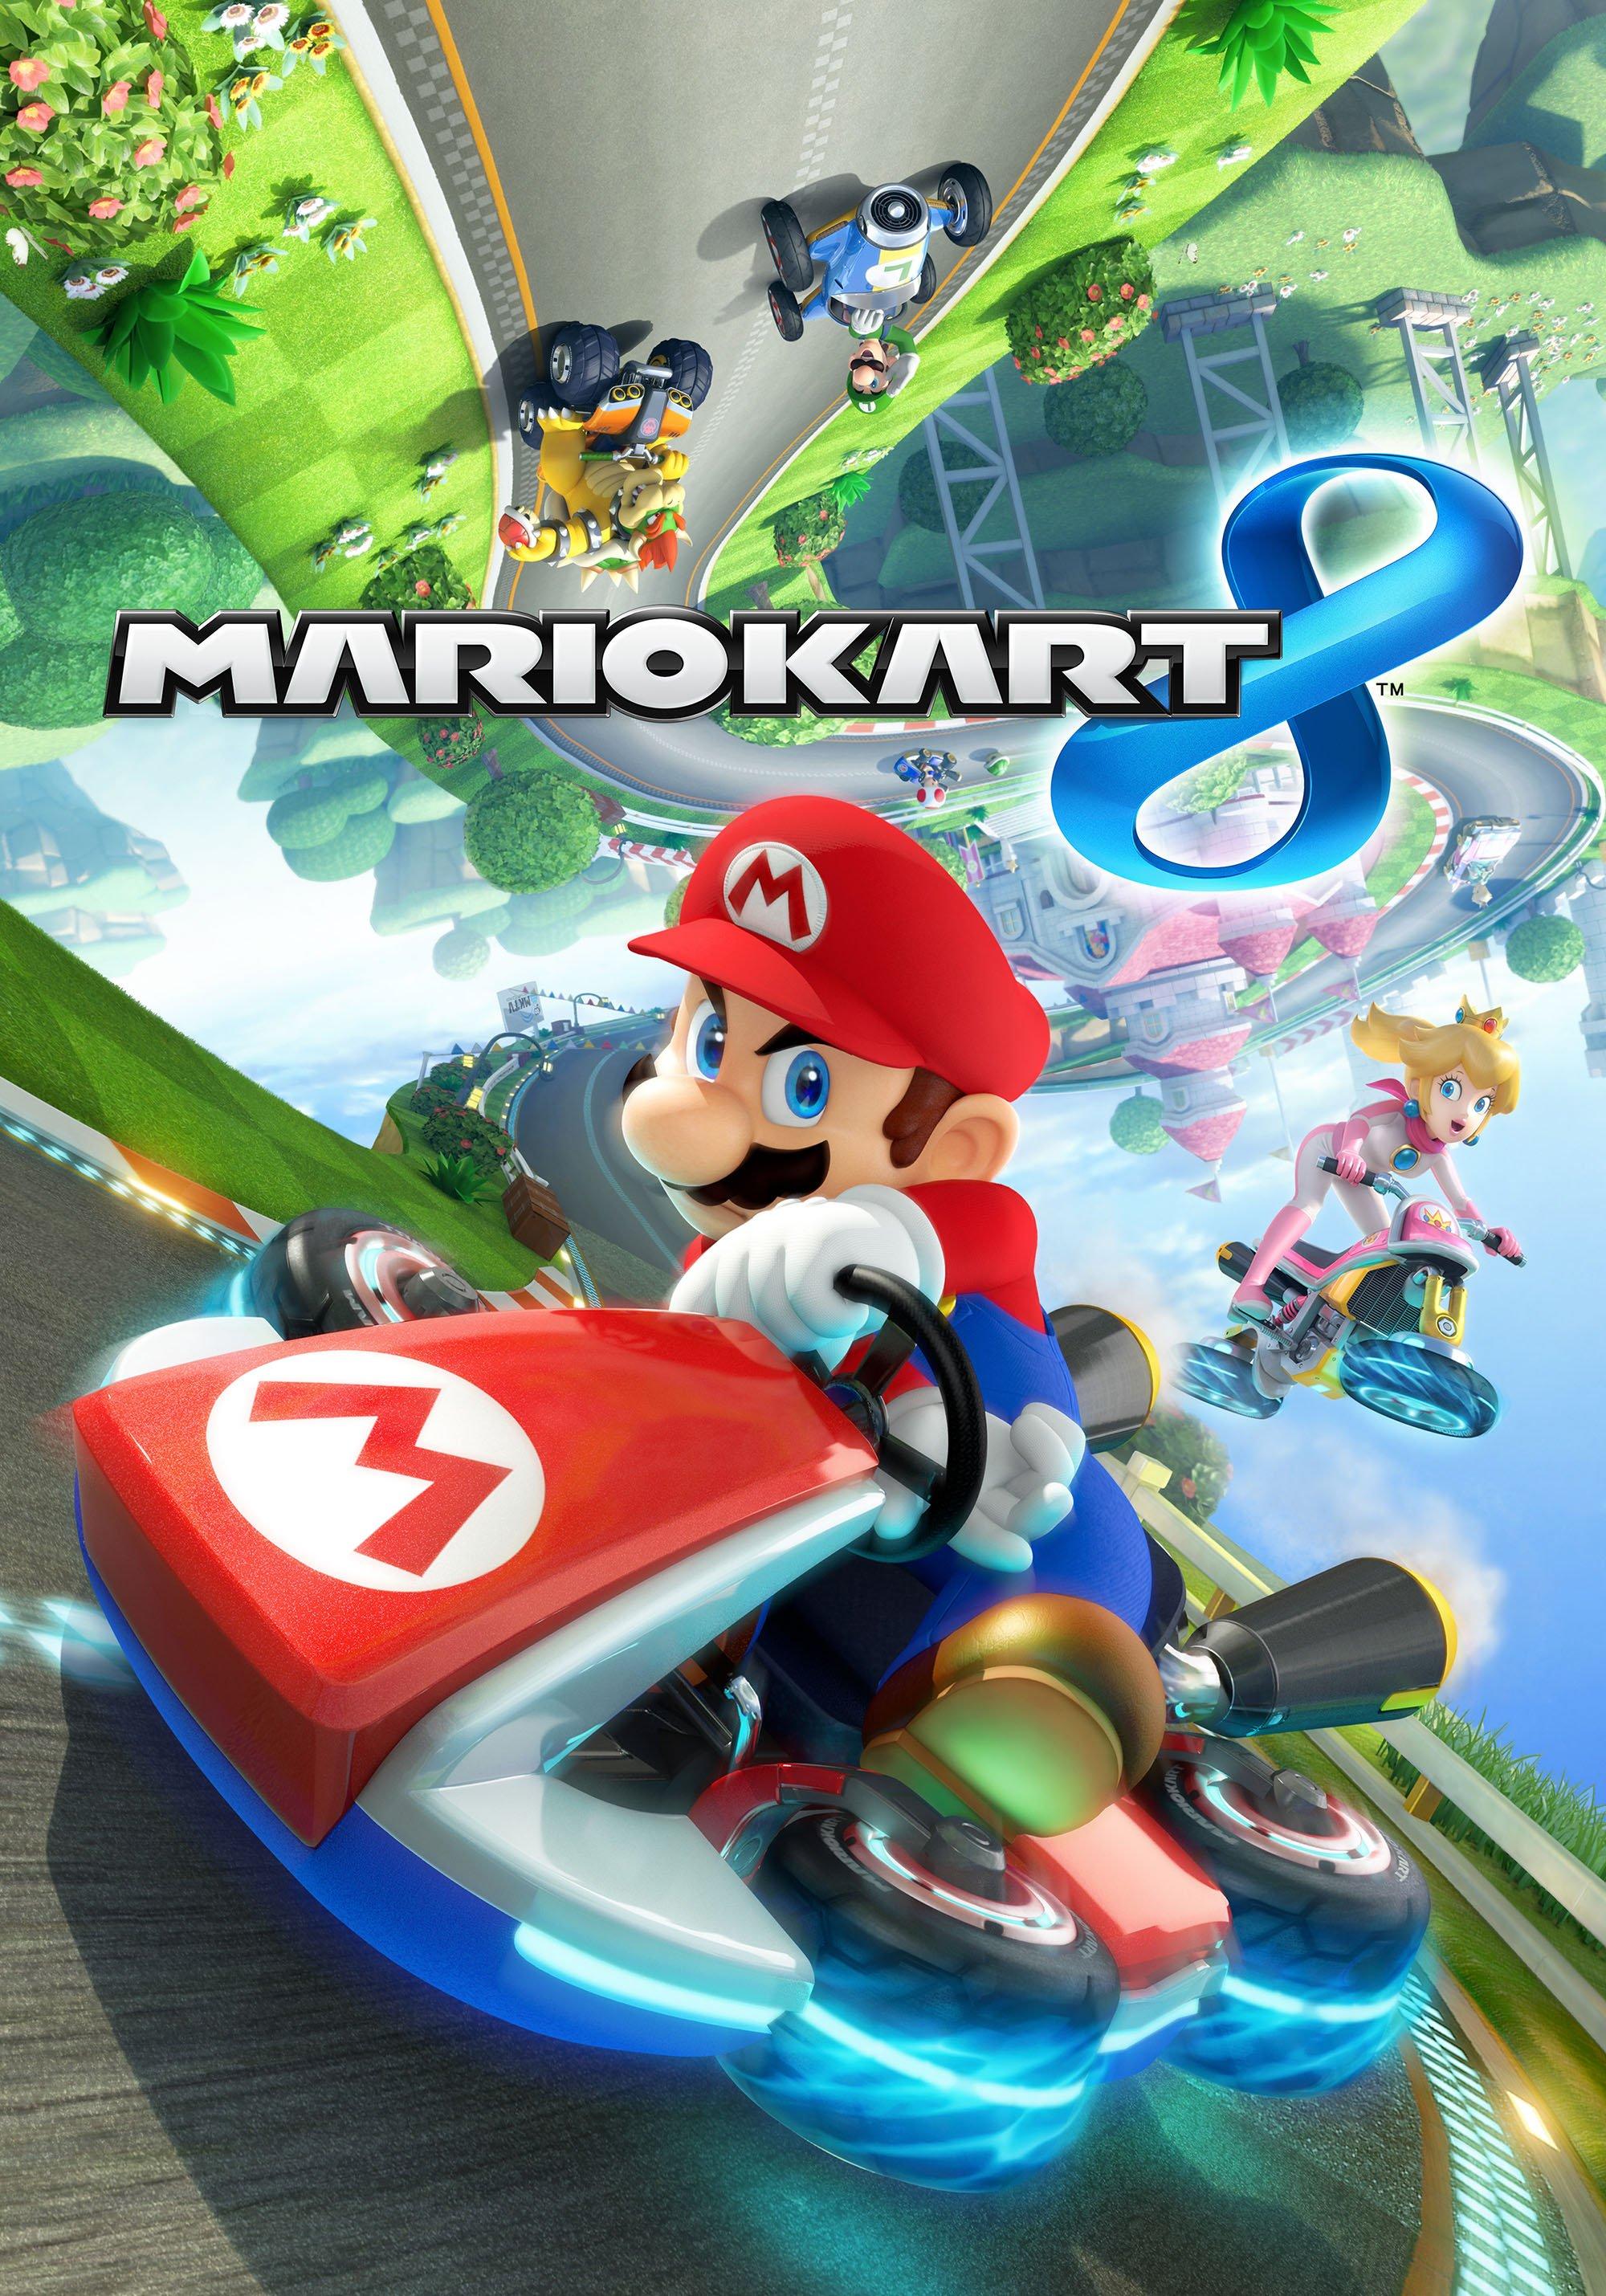 Mario Kart™ RACING DELUXE